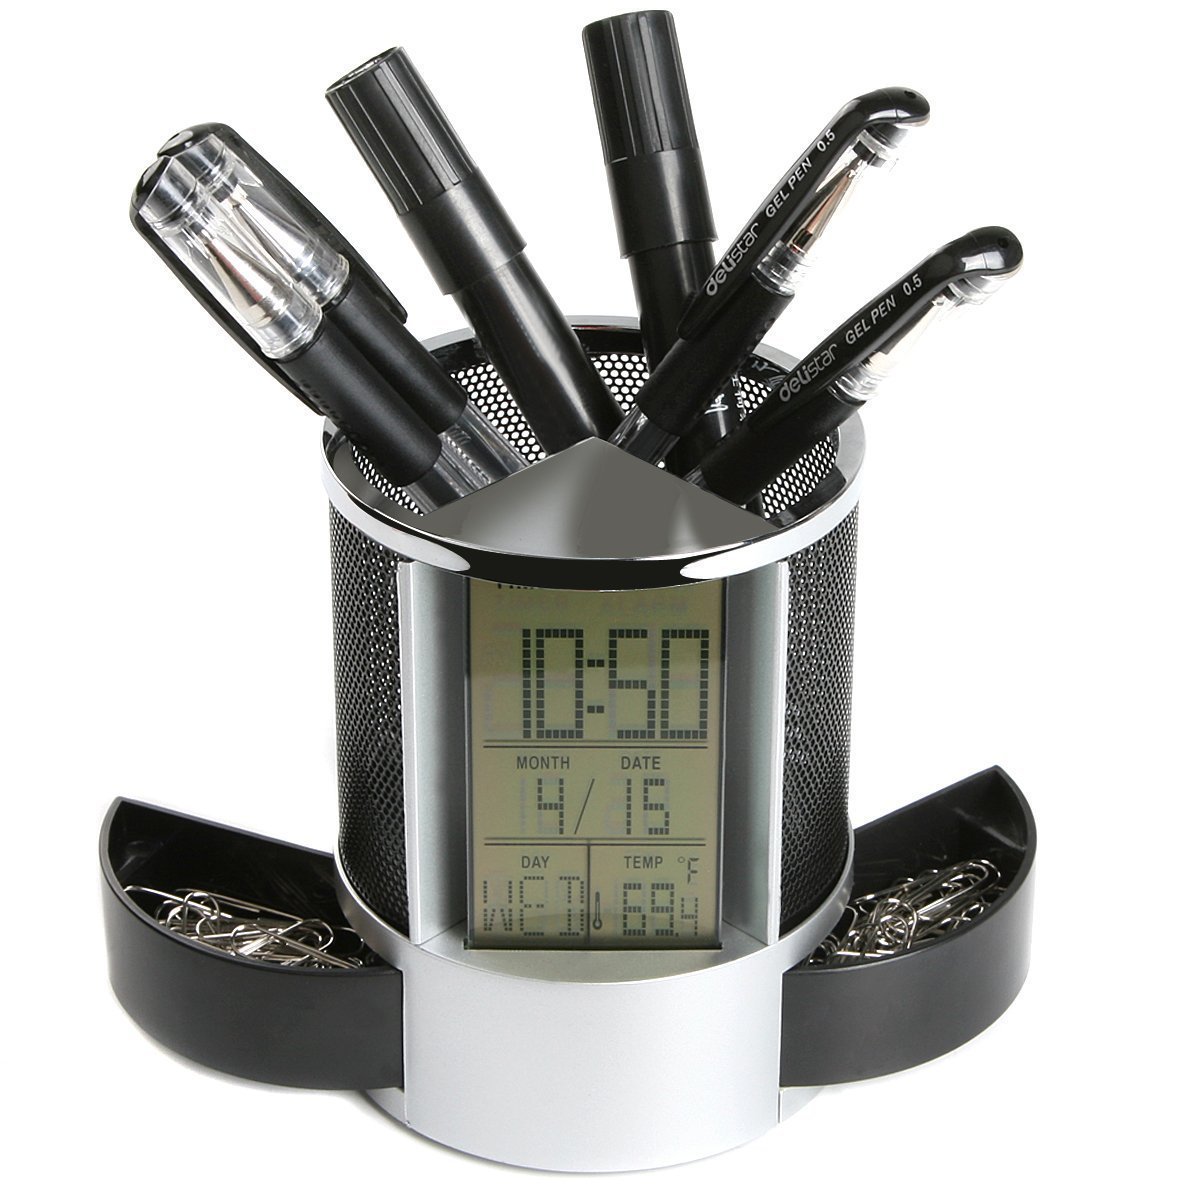 

DX-111 Black Digital LED Настольный будильник Часы Сетка Ручка Ручка Держатель для карандашей Календарь Таймер Температу